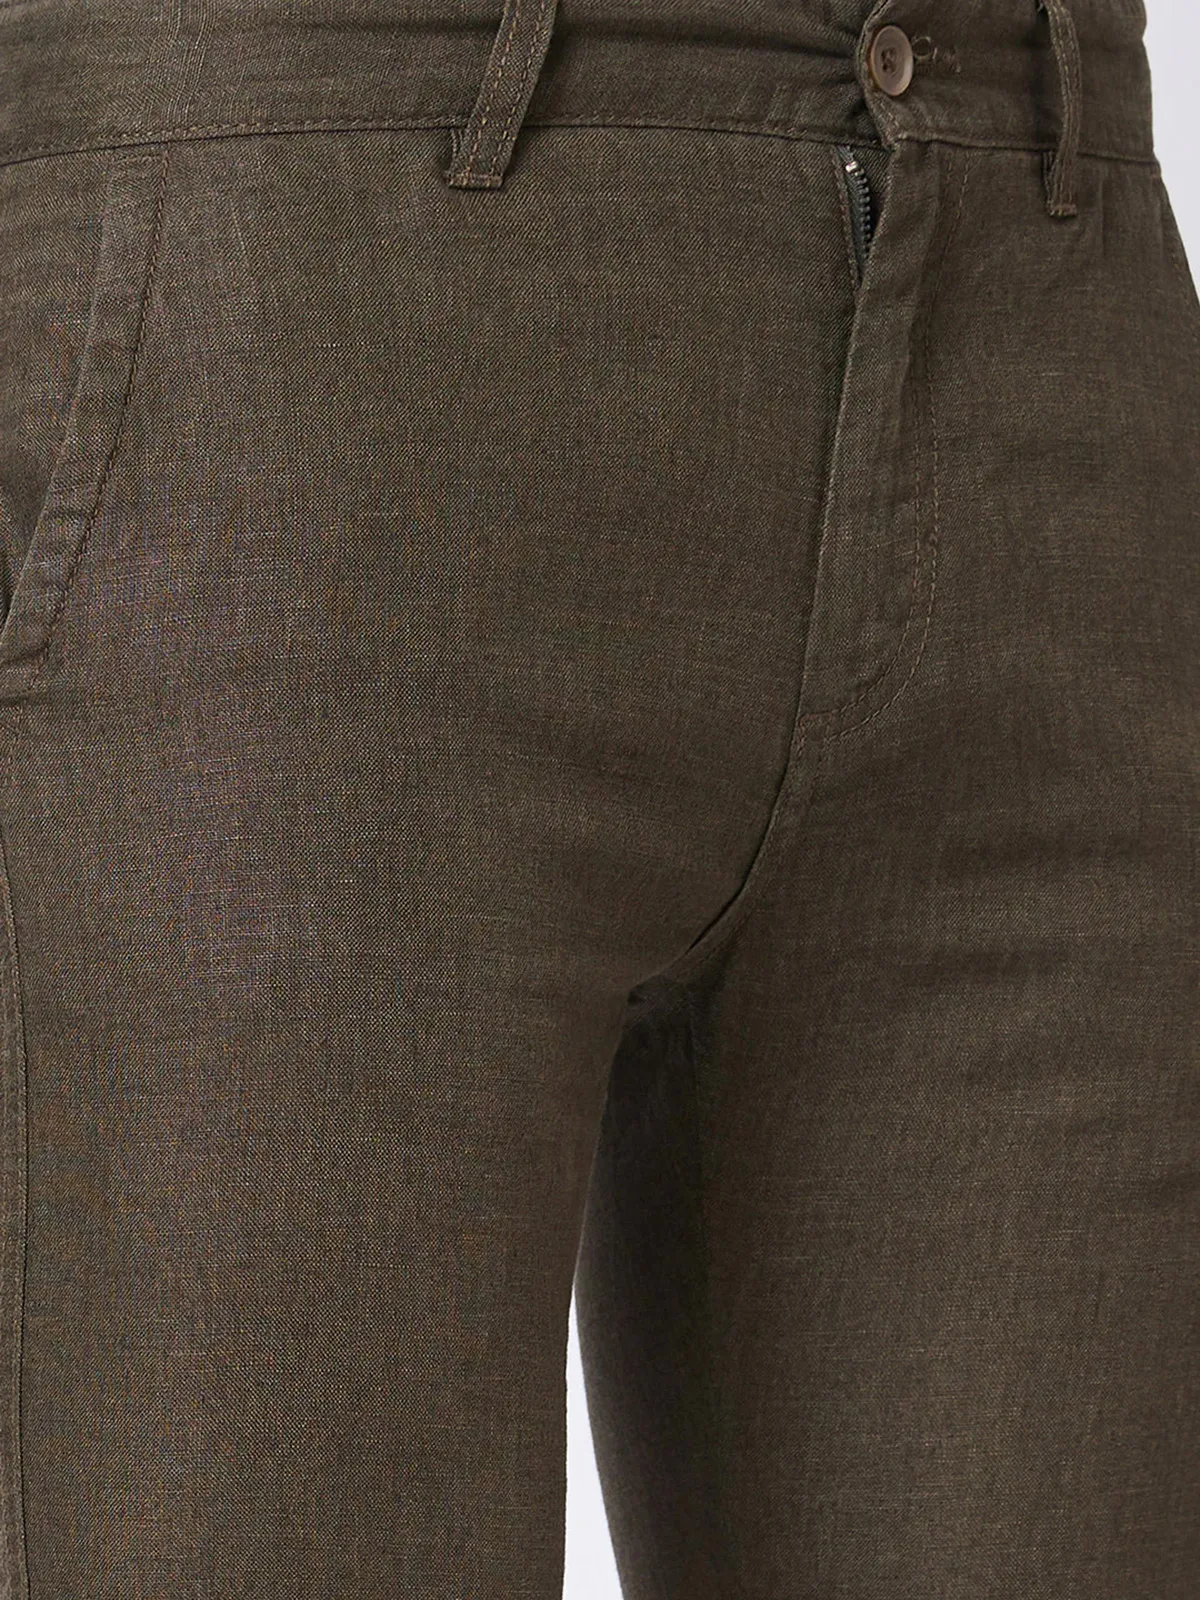 SPYKAR brown linen trouser